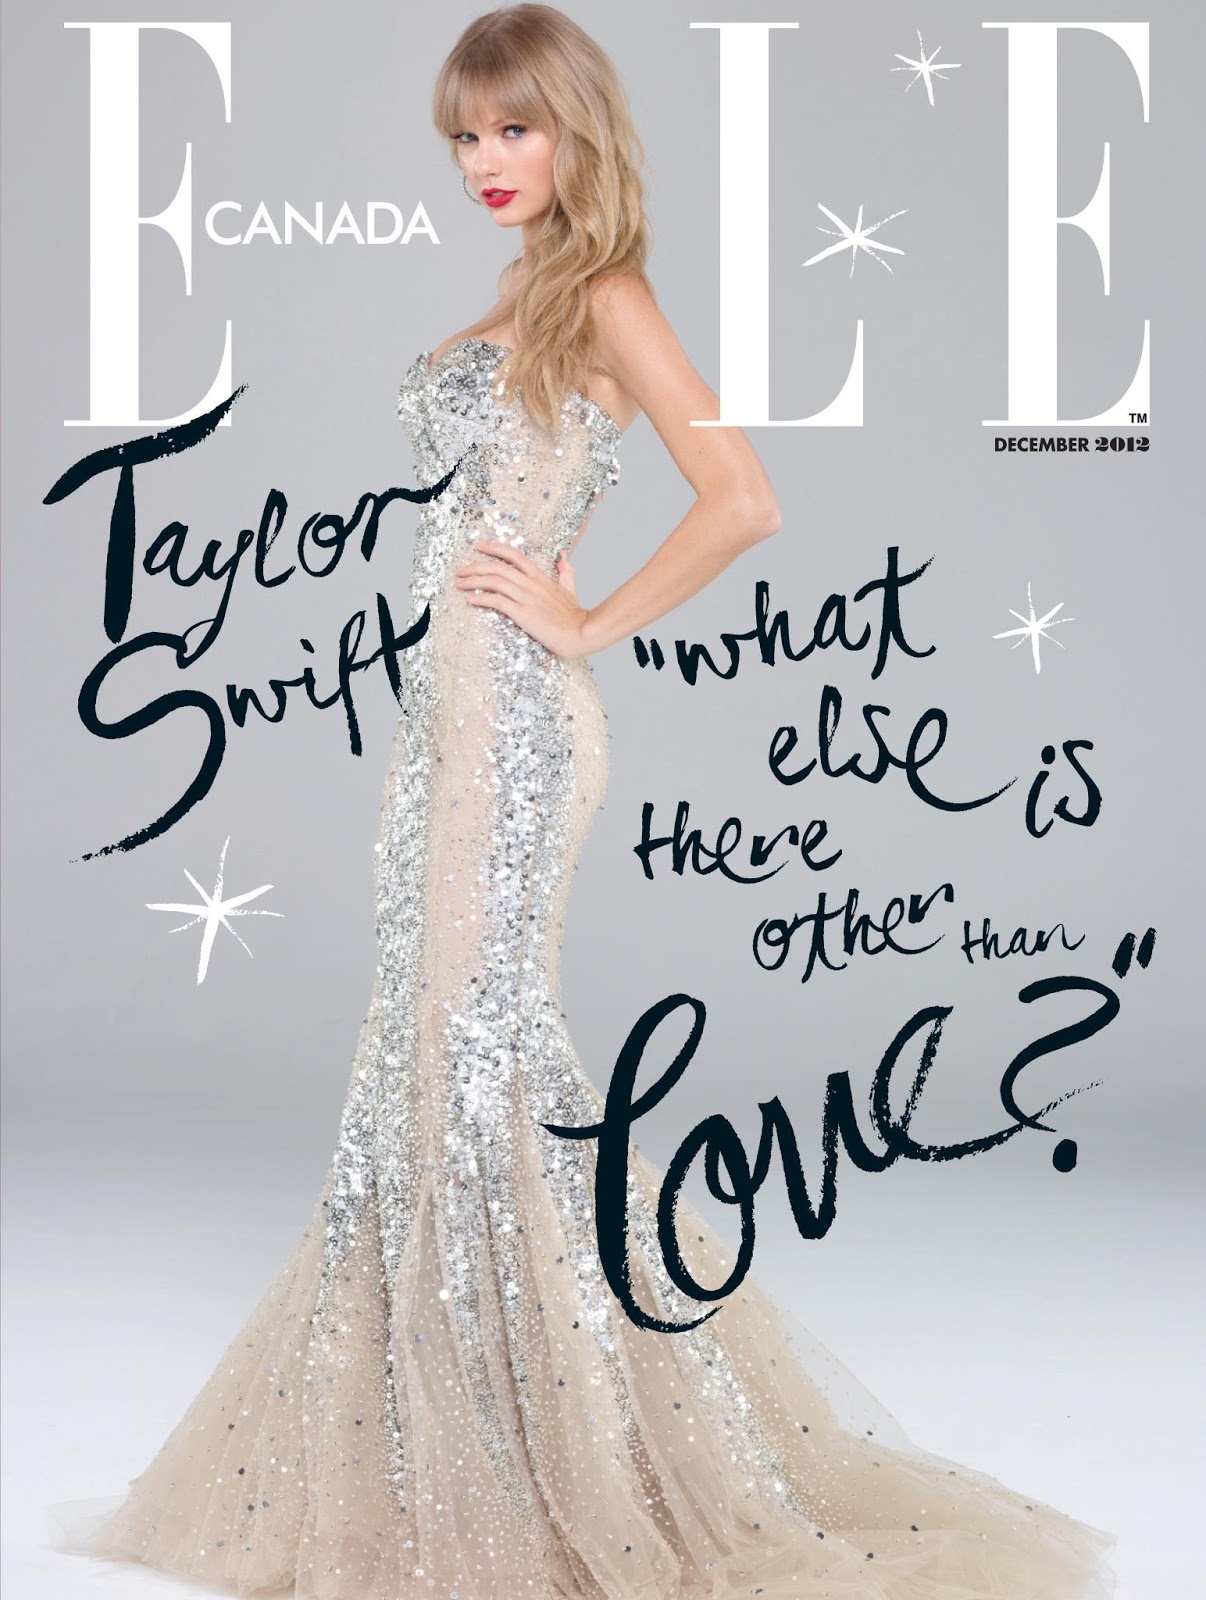 http://3.bp.blogspot.com/-7JIeRAvfPjw/UMLJhYSxr9I/AAAAAAAAgL8/Lq6UCJ4ThyI/s1600/Elle-Canada-December-2012-Taylor-Swift-Cover.jpg